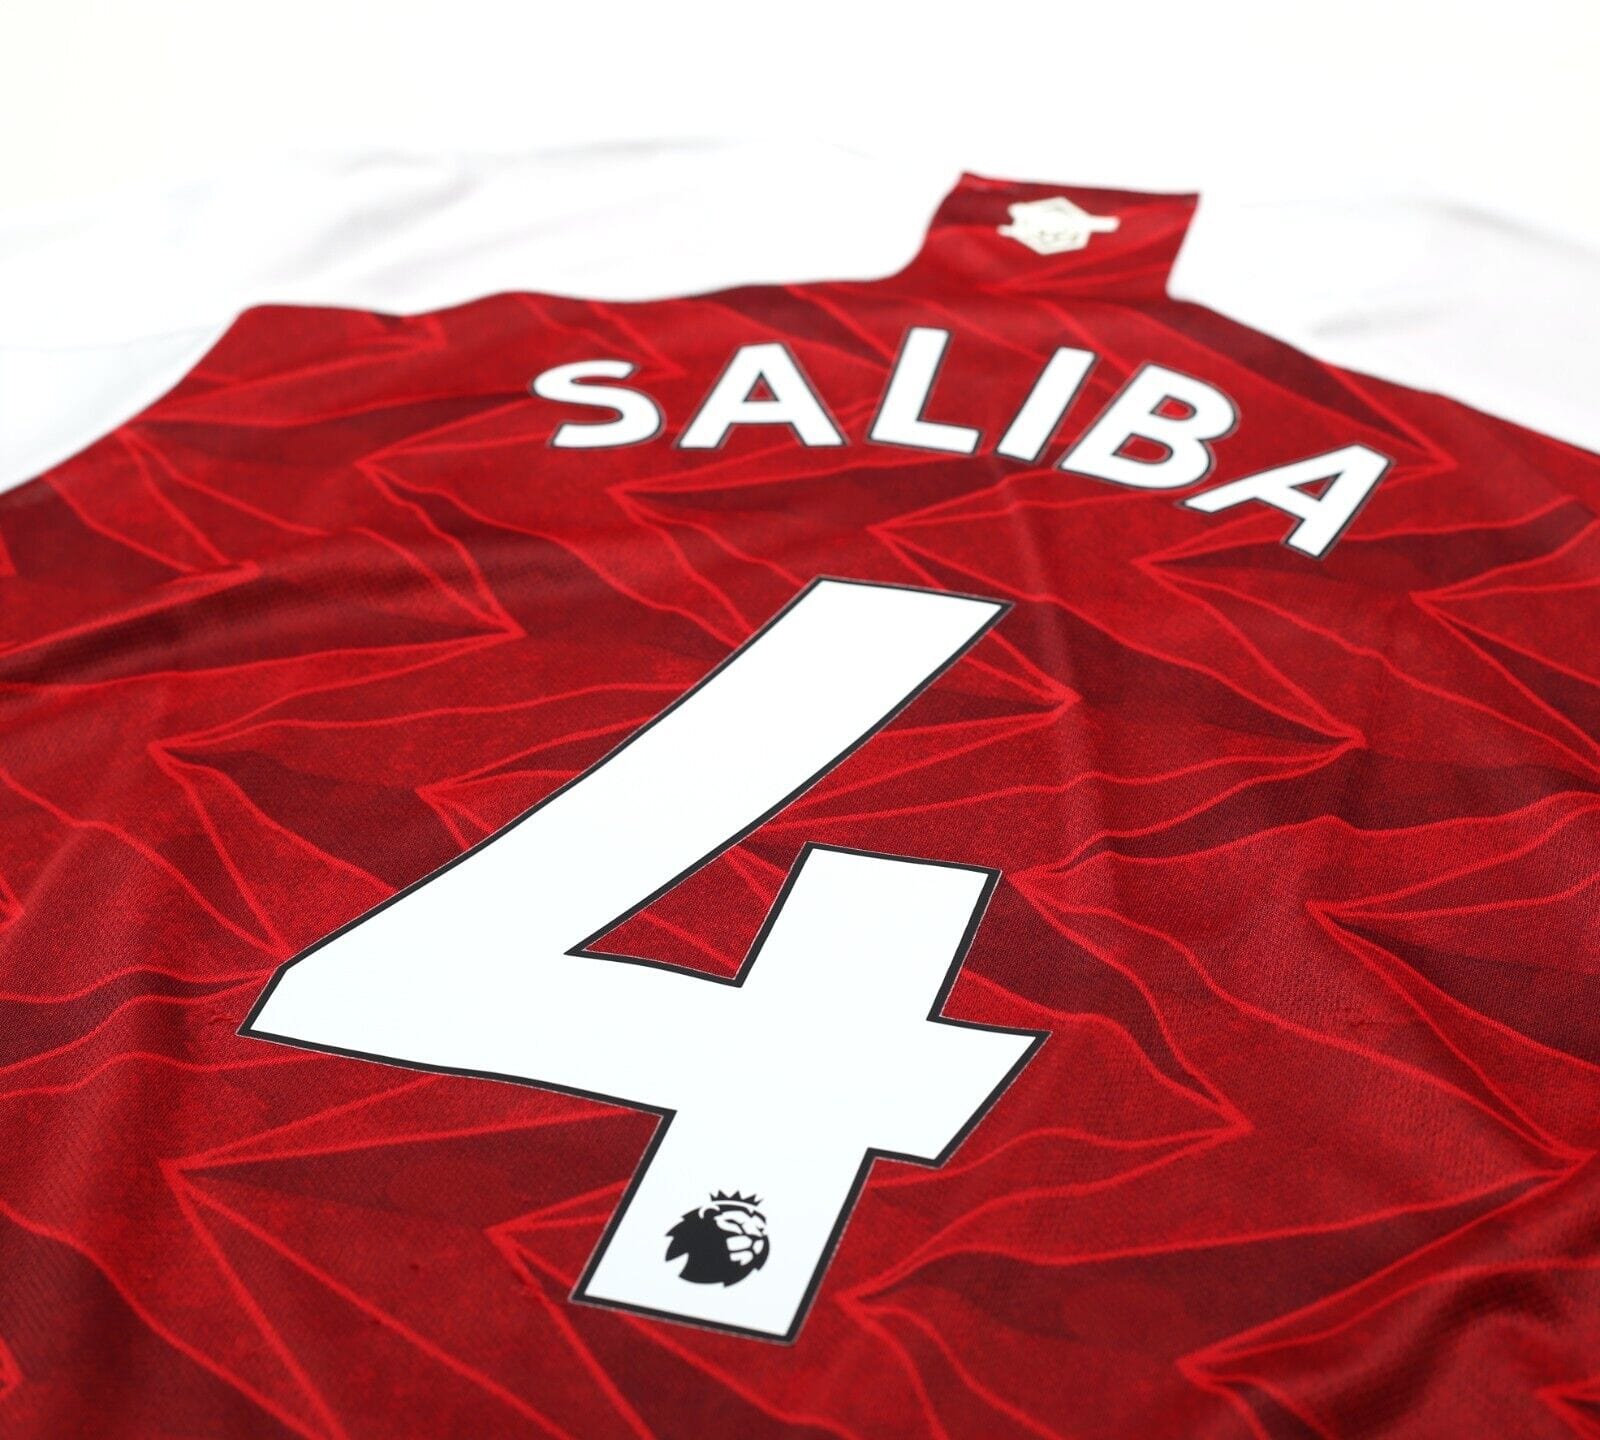 2020/21 SALIBA #4 Arsenal Vintage adidas Home Football Shirt (M)